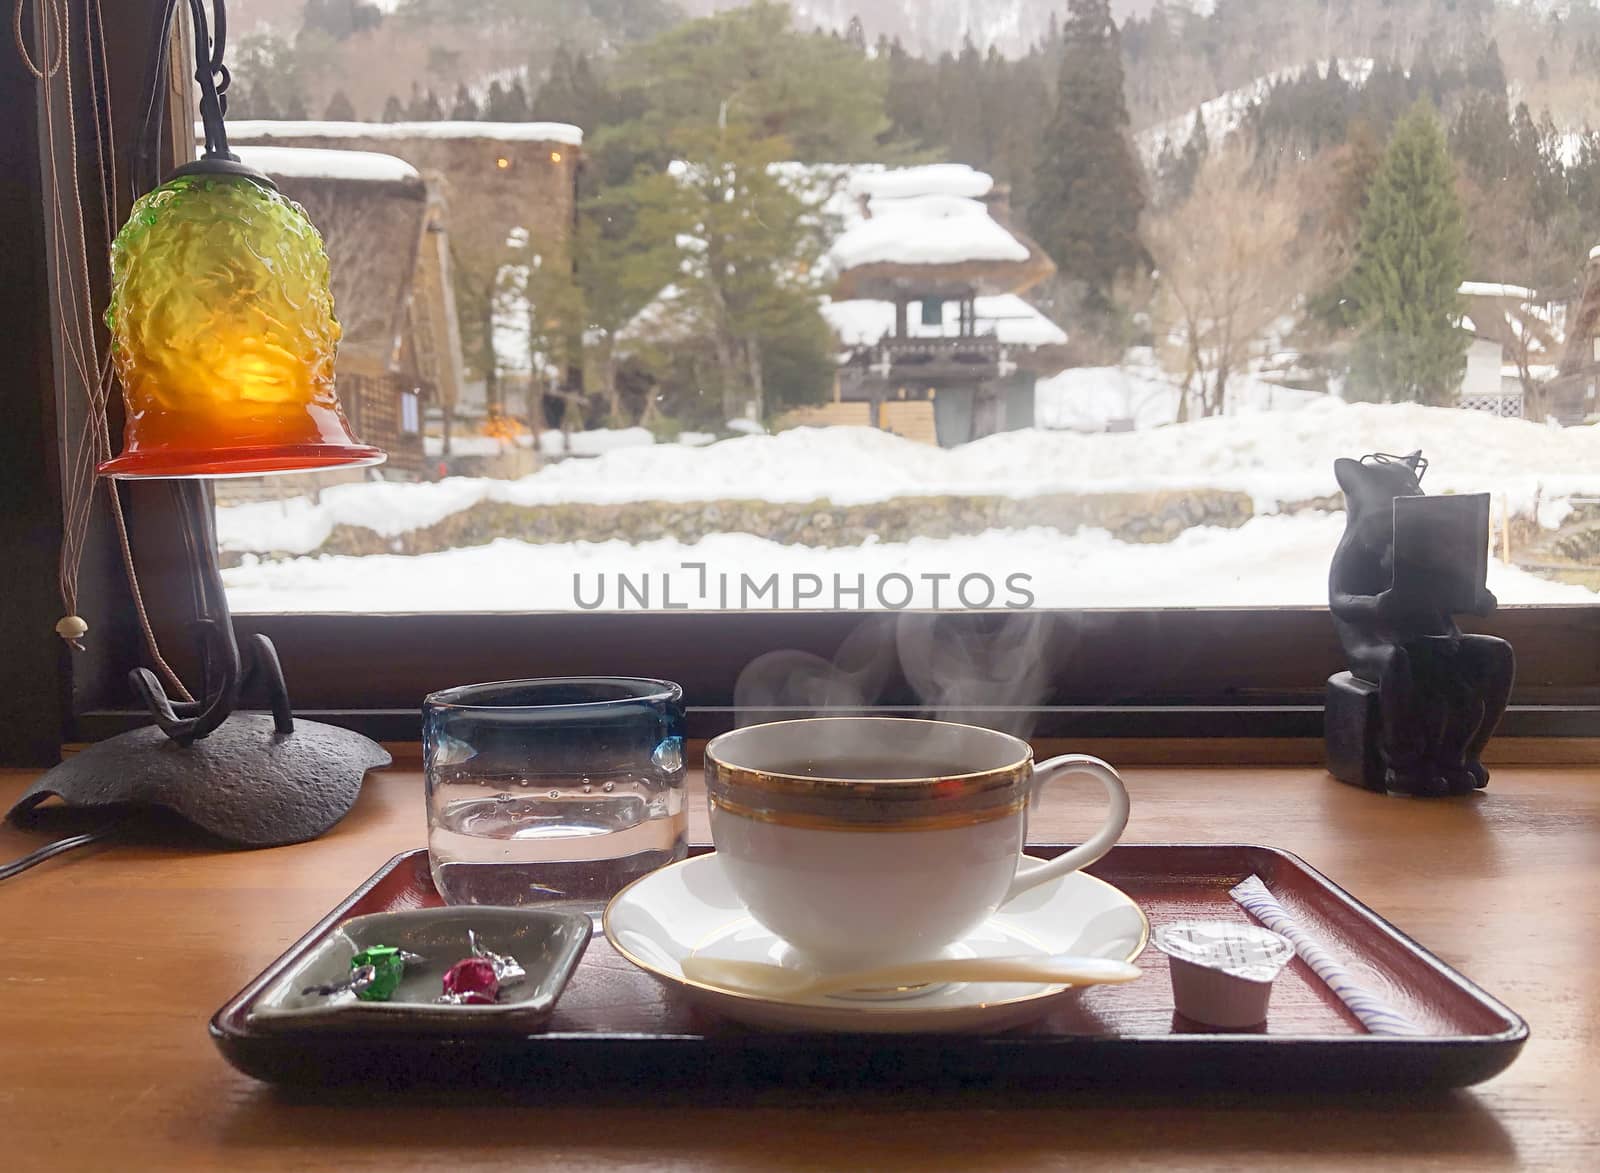 Coffee in the morning  and enjoying the winter snow view at Shirakawago village, Gifu, Japan.